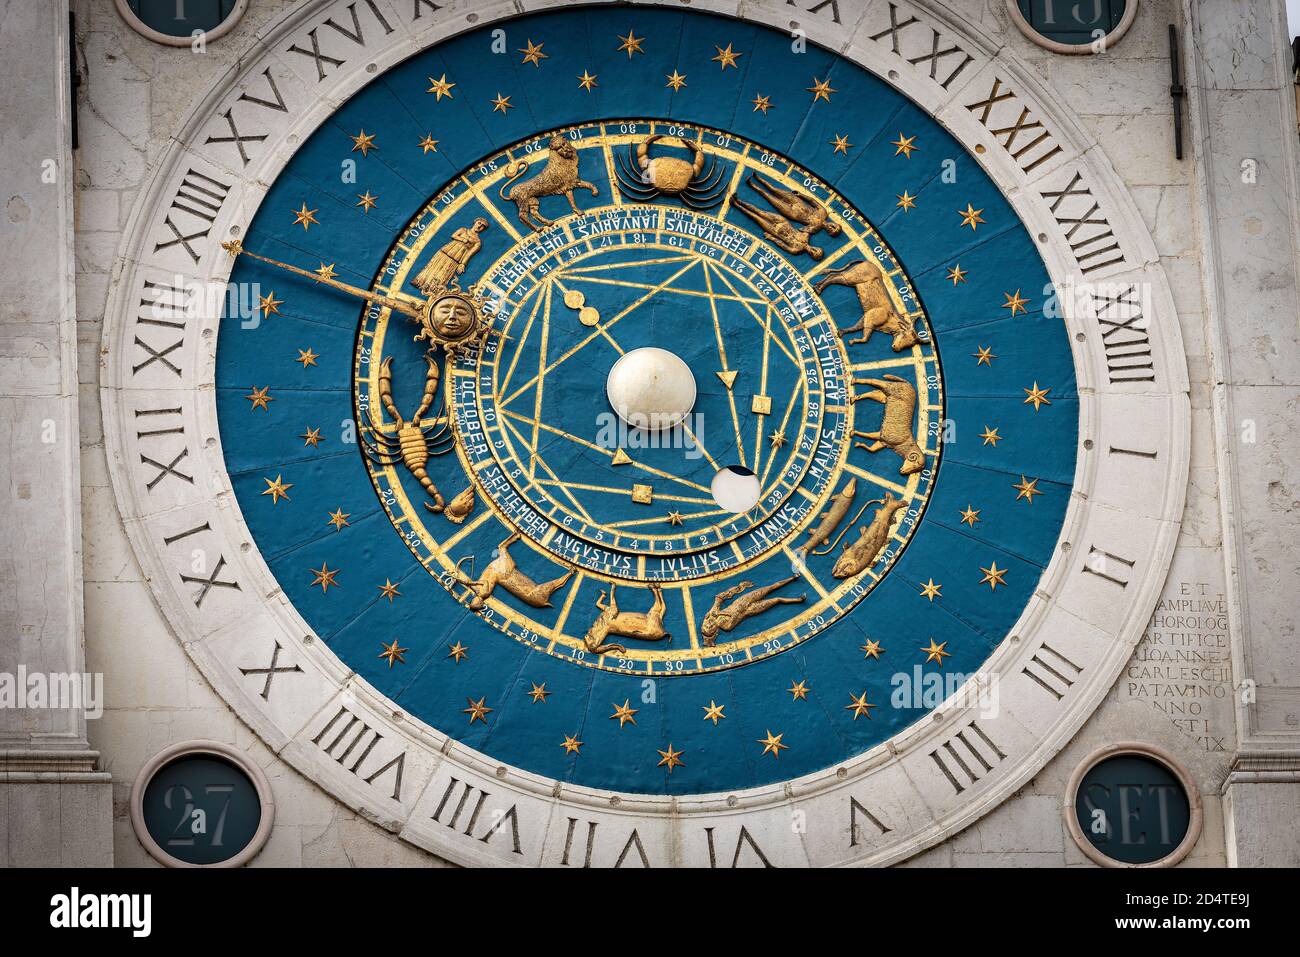 Nahaufnahme des mittelalterlichen Uhrturms mit Sternzeichen in Padua Innenstadt (Padua, XIV Jahrhundert), Piazza dei Signori, Venetien, Italien, Europa. Stockfoto